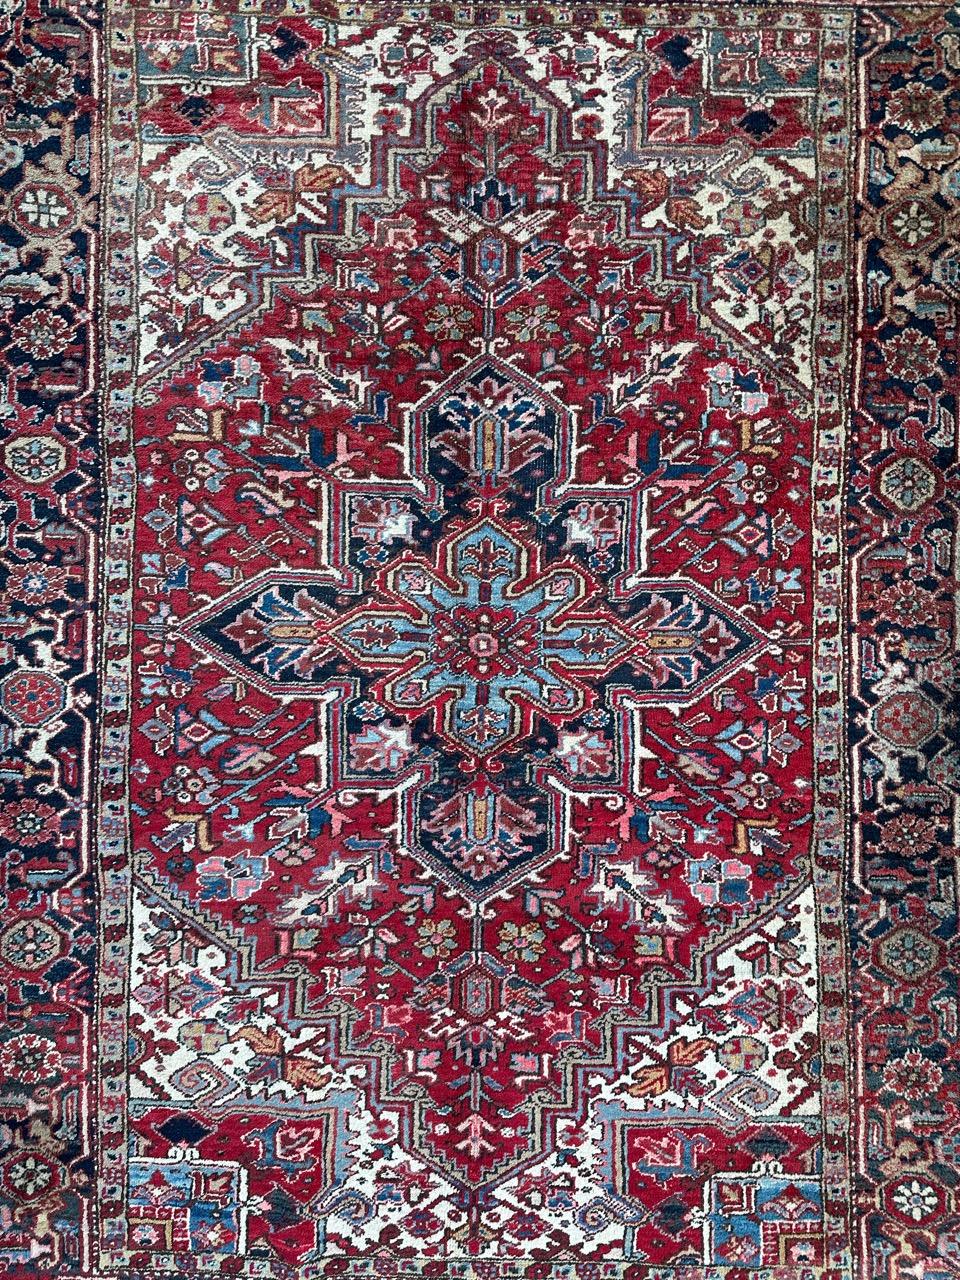 Hübscher Heriz-Teppich aus der Mitte des Jahrhunderts mit schönem Stammes- und geometrischem Muster in schönen Farben, vollständig handgeknüpft mit Wolle auf Baumwollbasis.

✨✨✨
